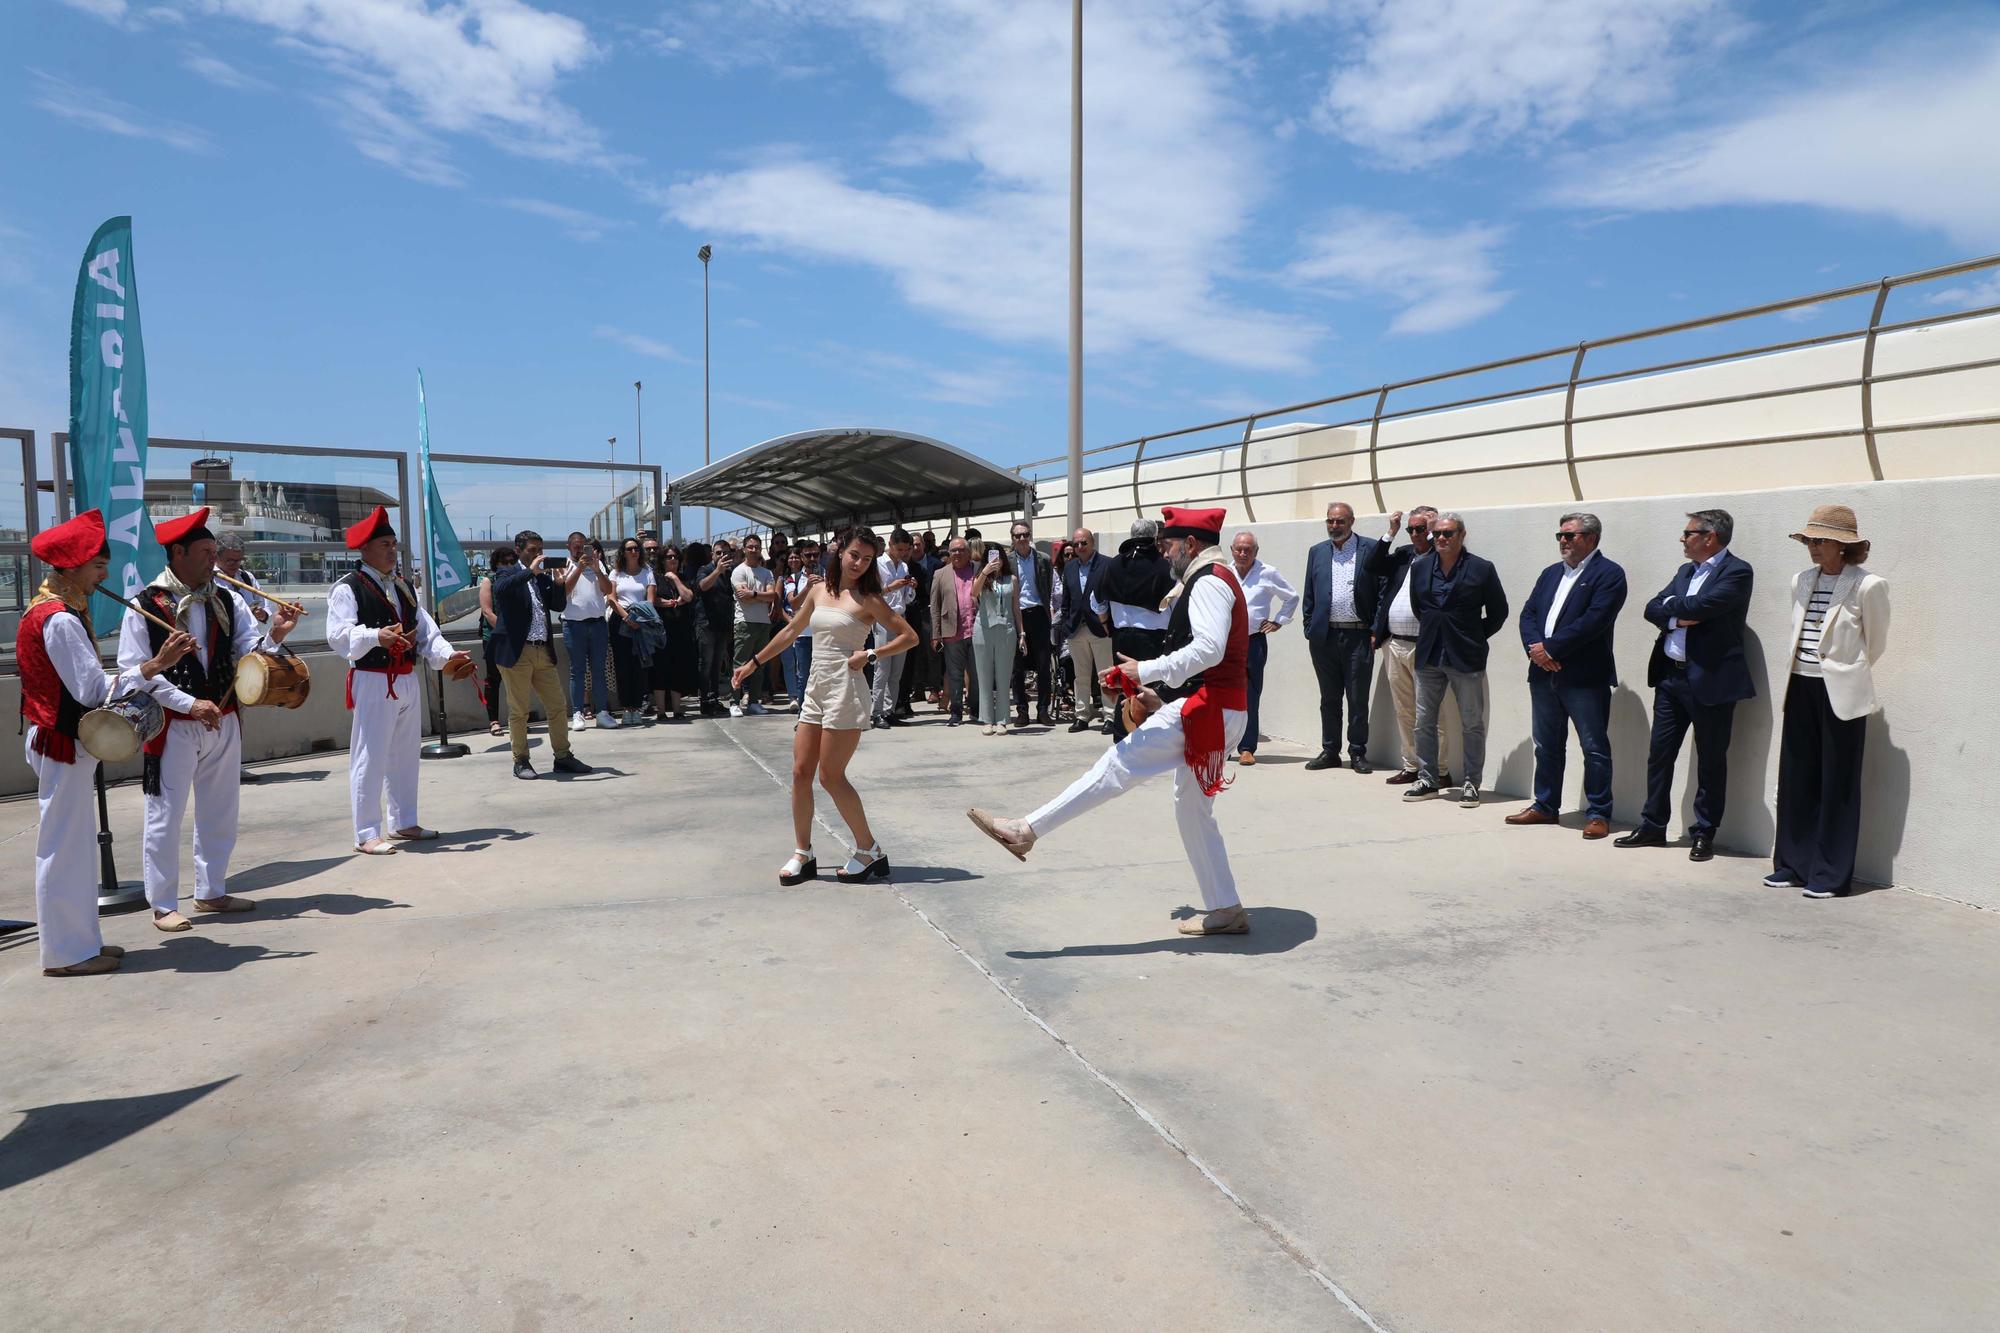 Galería de imágenes del primer ferry eléctrico de España que conecta Ibiza y Formentera